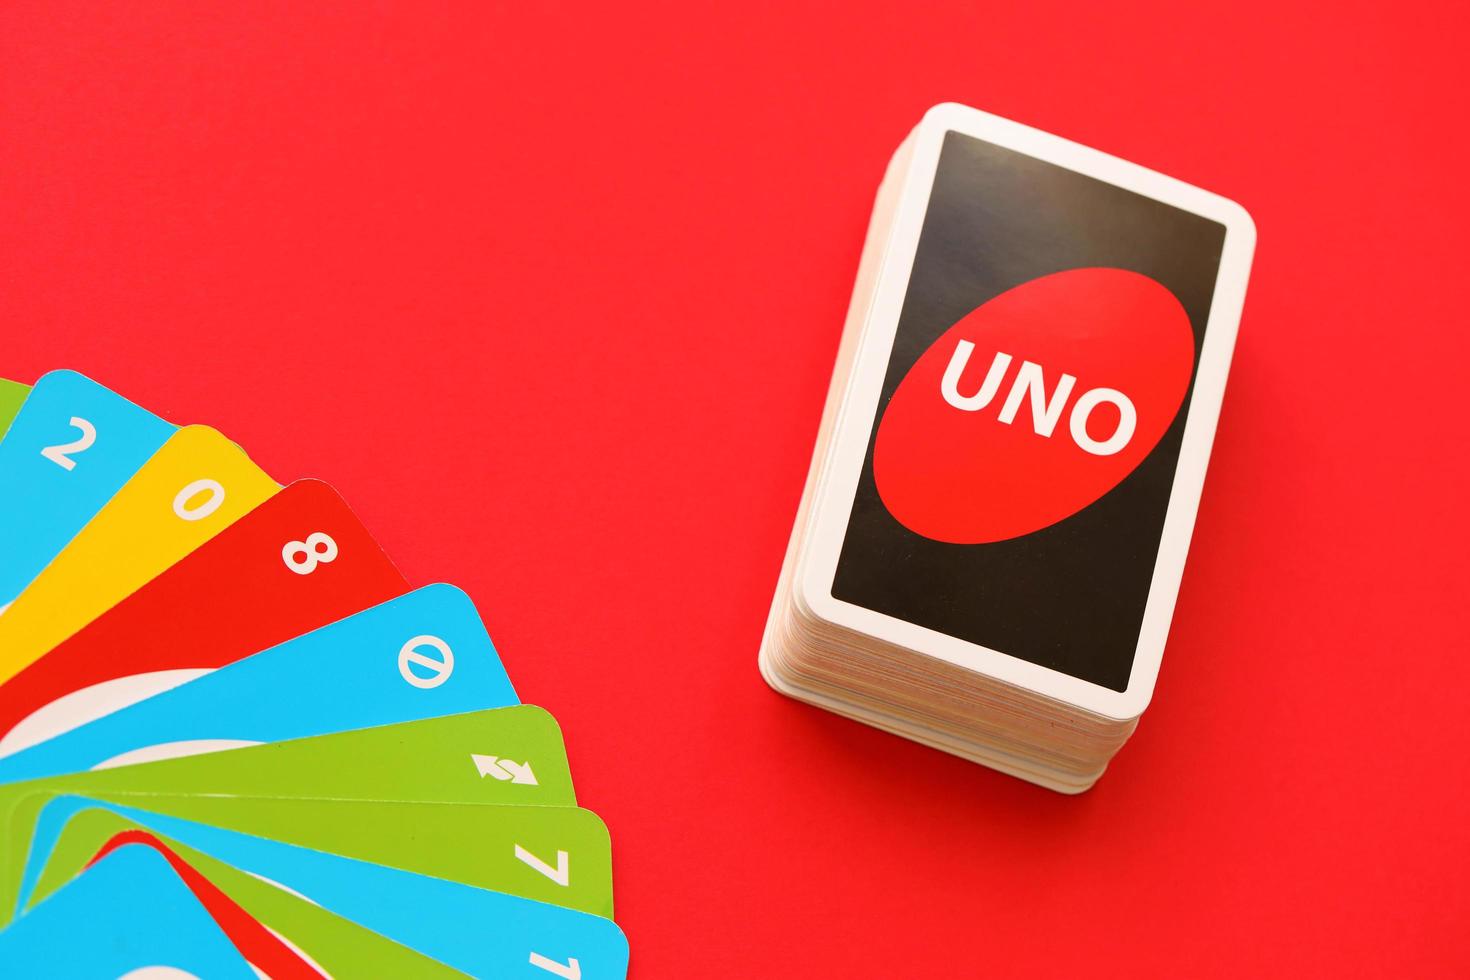 Bộ bài trò chơi UNO: Bộ bài trò chơi UNO được thiết kế đơn giản, không có quá nhiều chi tiết, nhưng lại mang tới cho người chơi cảm giác mới lạ và thú vị với các thẻ bài được thiết kế đầy sáng tạo và đa dạng. Hãy xem hình ảnh về bộ bài trò chơi UNO để khám phá thêm nhiều điều thú vị nhé!